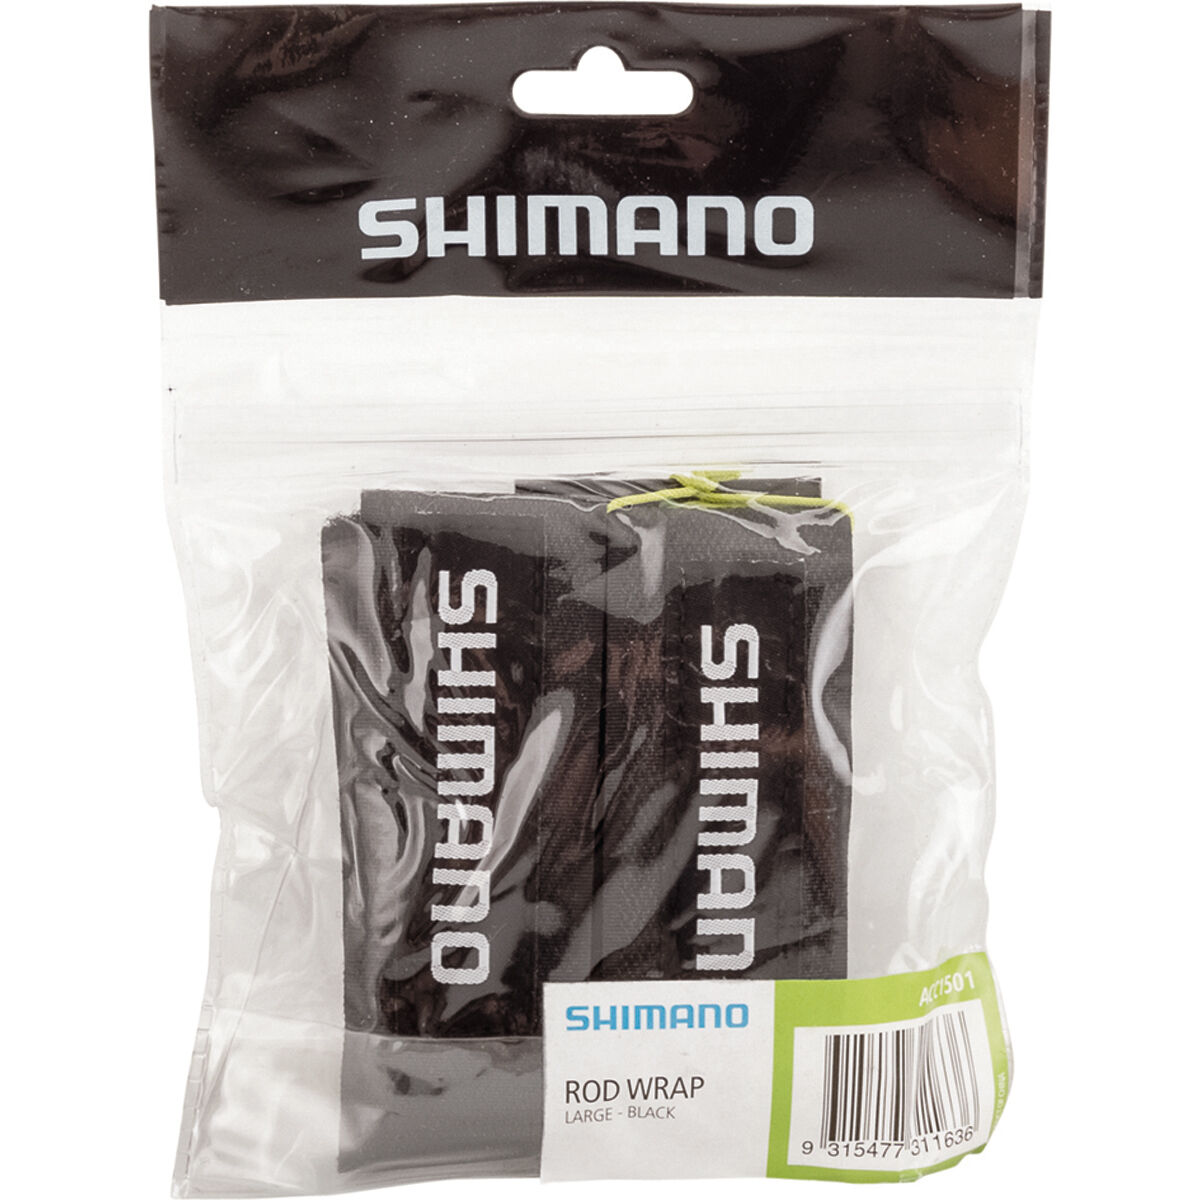 Shimano Rod Wrap Small